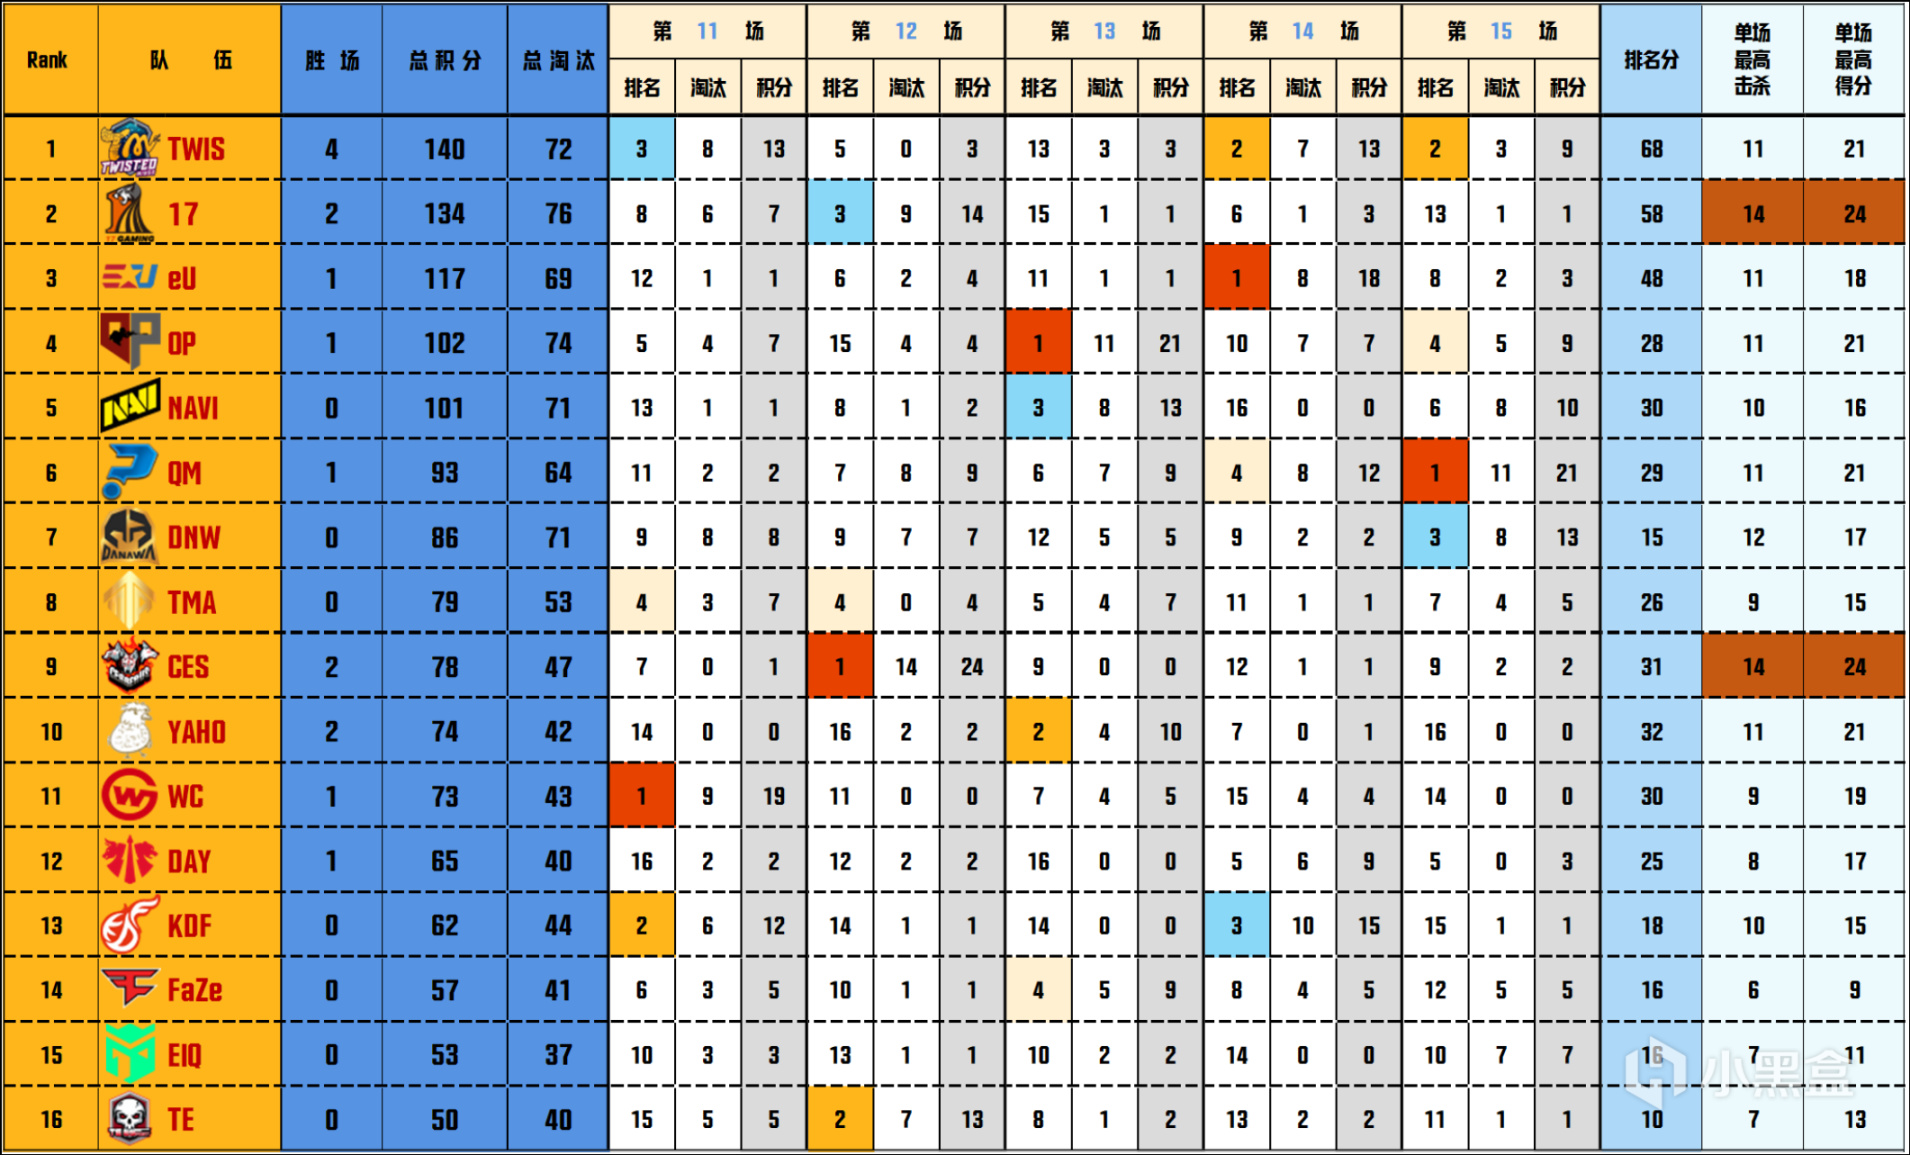 【數據流】PGC決賽D3/4,TWIS 140分來到榜首,DNW_seoul戰神31淘汰-第1張